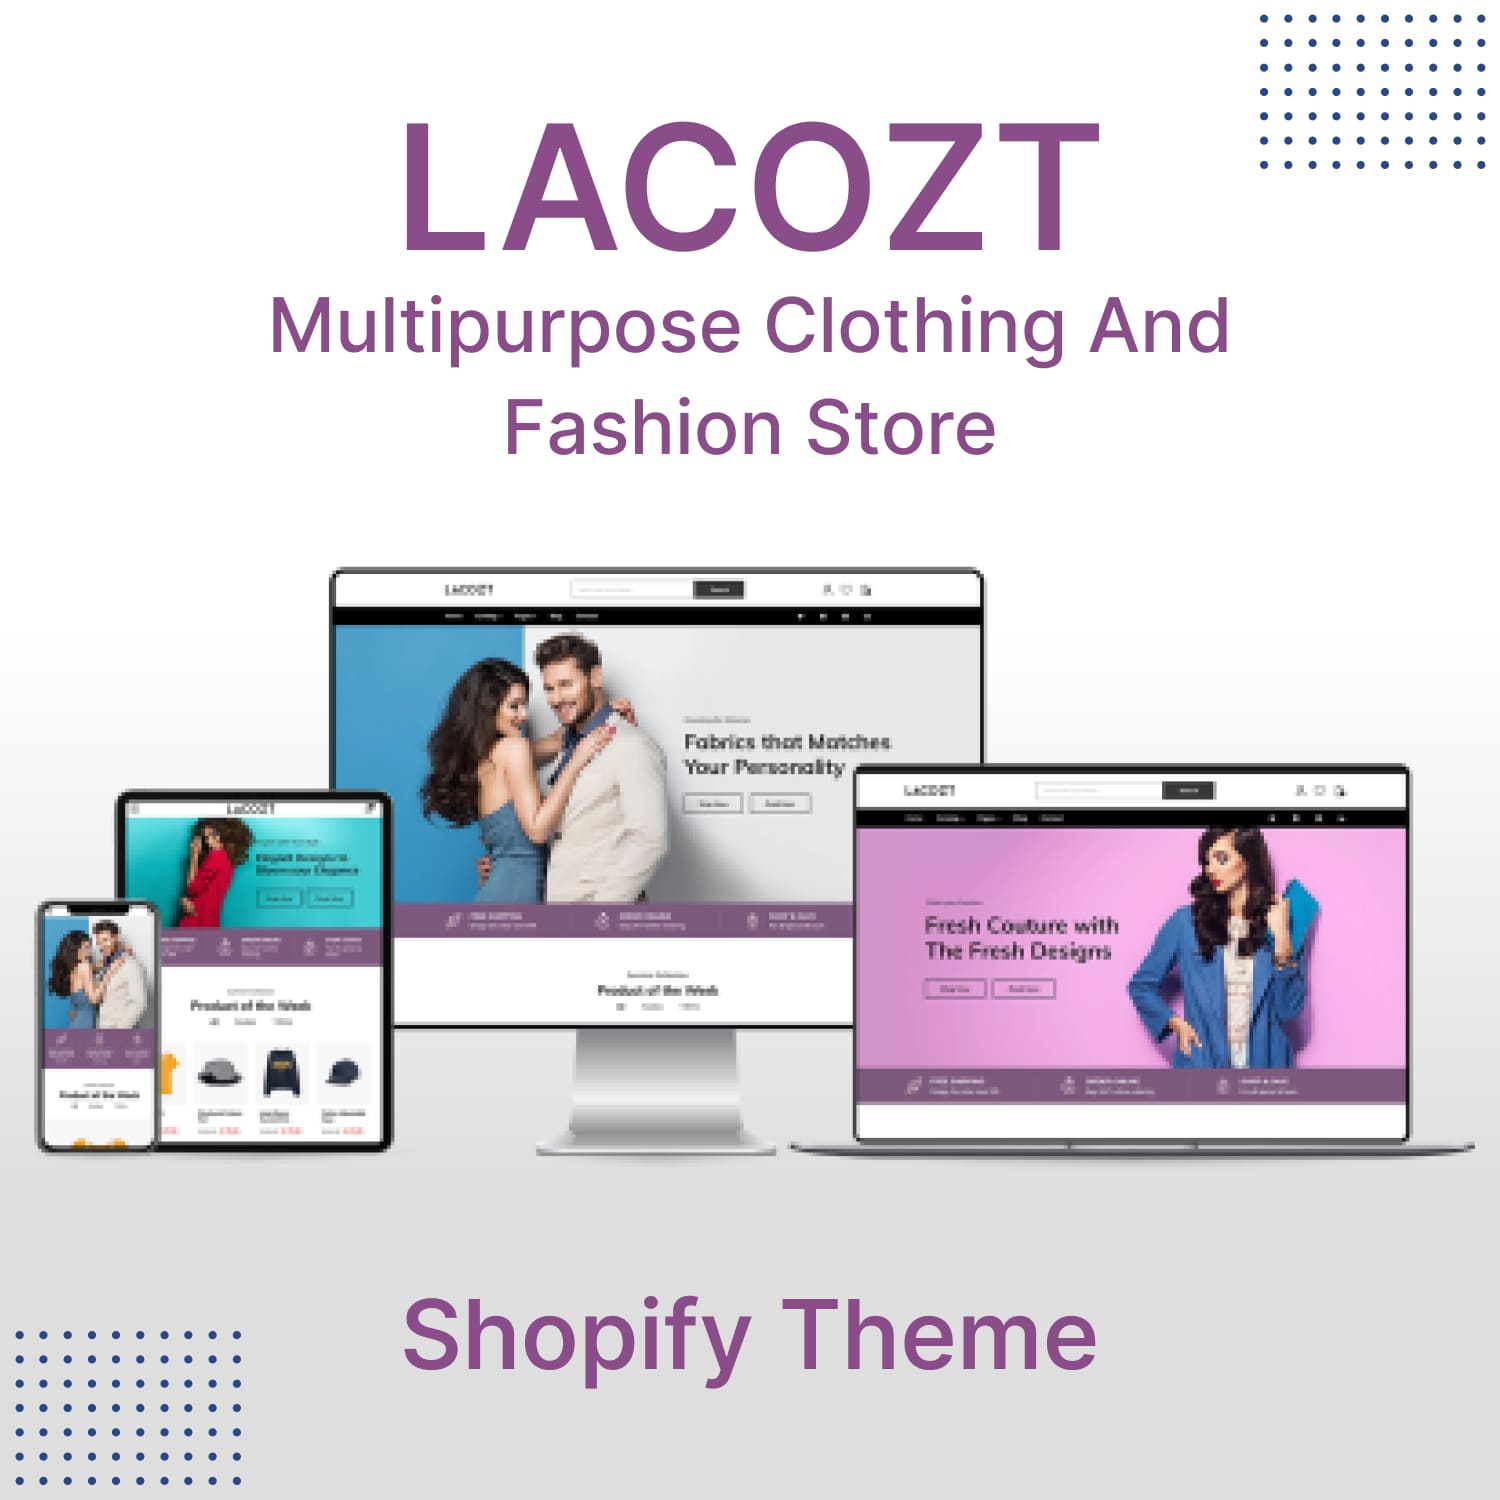 Lacozt - Multipurpose Clothing, Fashion Store Shopify Theme